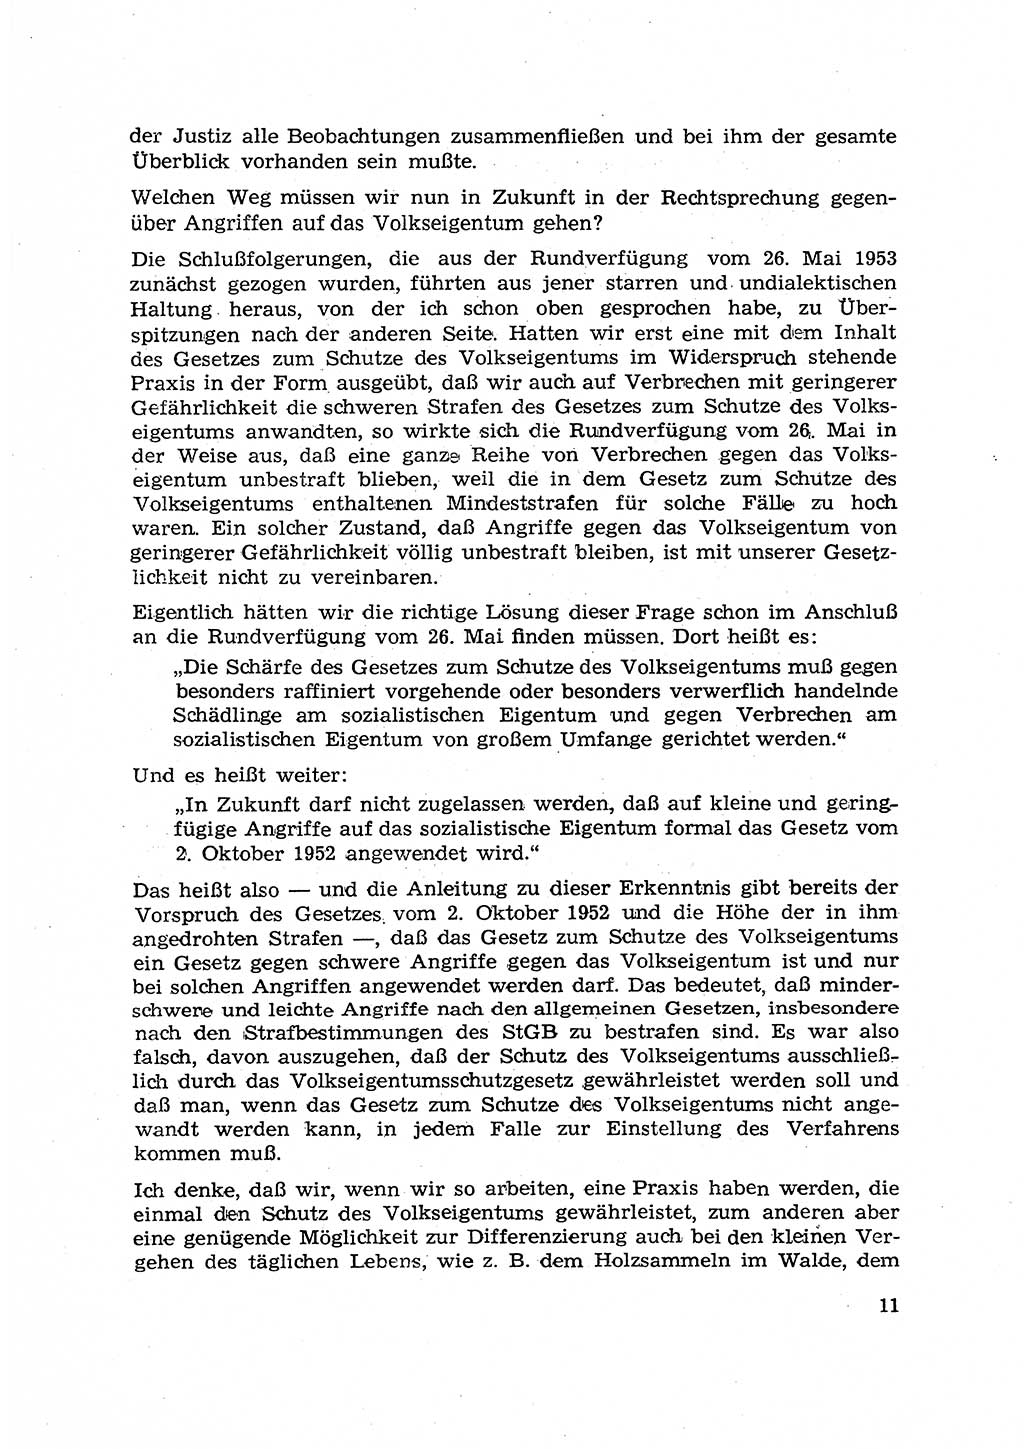 Hauptaufgaben der Justiz [Deutsche Demokratische Republik (DDR)] bei der Durchführung des neuen Kurses 1953, Seite 11 (Hpt.-Aufg. J. DDR 1953, S. 11)